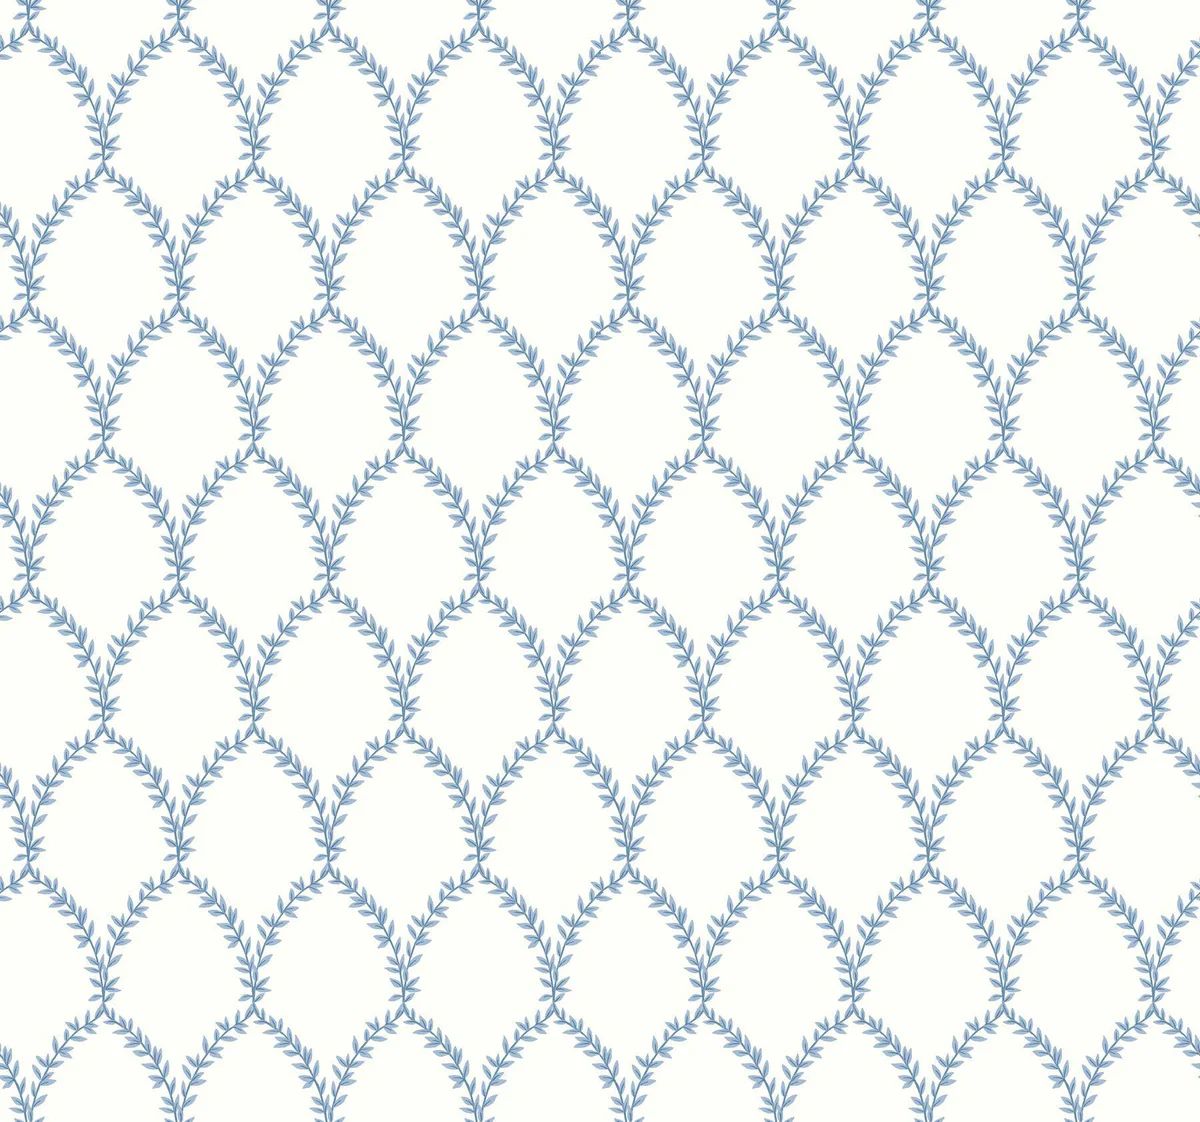 Rifle Paper Co. Laurel Blue/White Wallpaper | DecoratorsBest